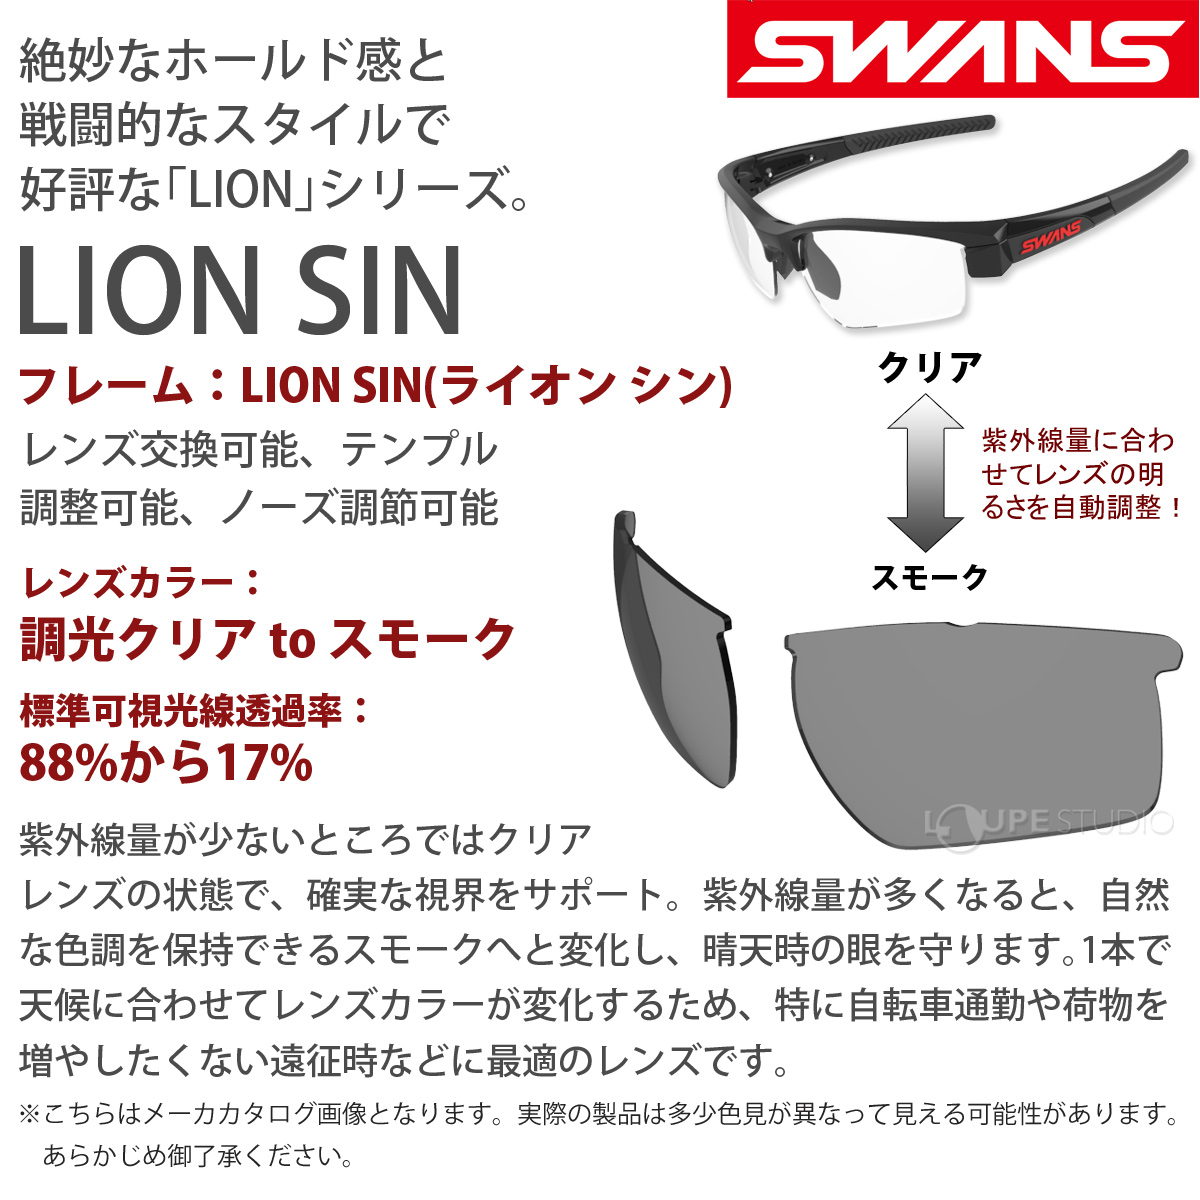 【色: 0151 MGMR】SWANS(スワンズ) スポーツサングラス ライオン